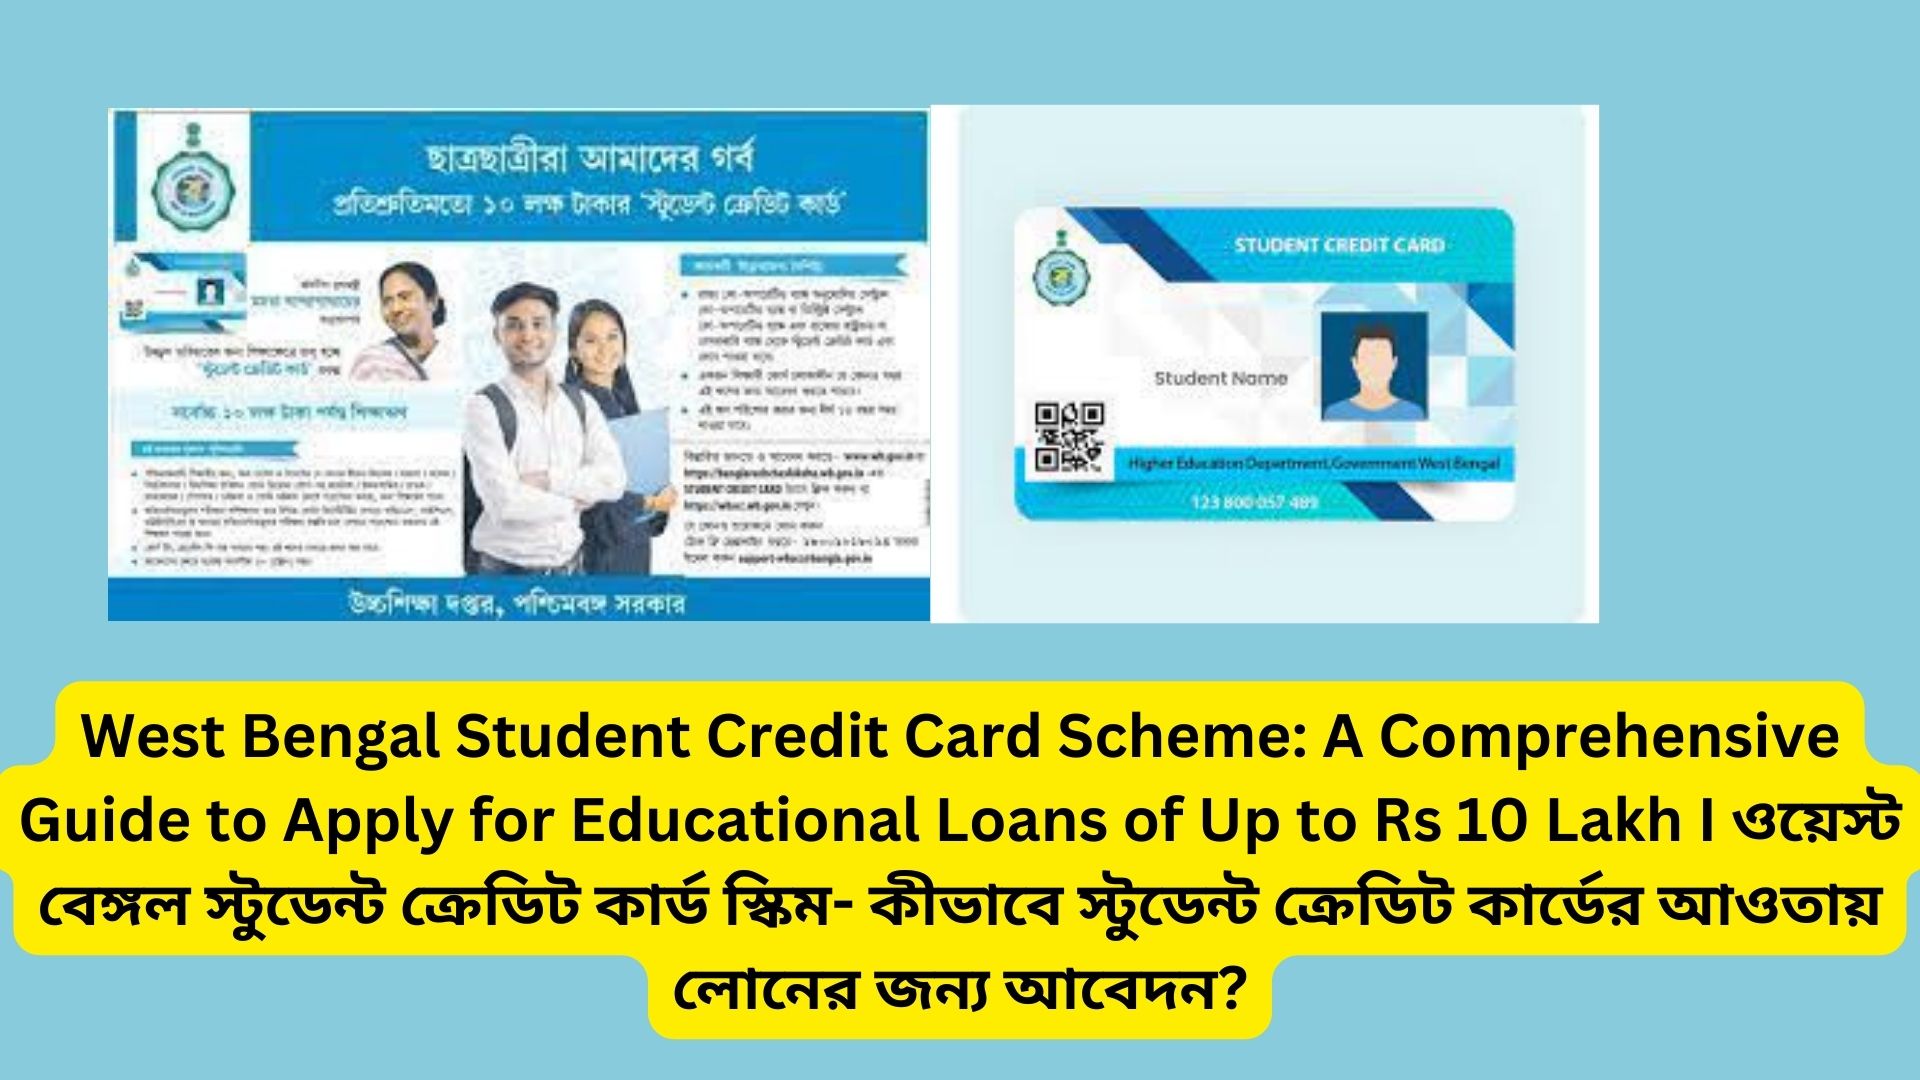 West Bengal Student Credit Card Scheme: A Comprehensive Guide to Apply for Educational Loans of Up to Rs 10 Lakh I ওয়েস্ট বেঙ্গল স্টুডেন্ট ক্রেডিট কার্ড স্কিম- কীভাবে স্টুডেন্ট ক্রেডিট কার্ডের আওতায় লোনের জন্য আবেদন?